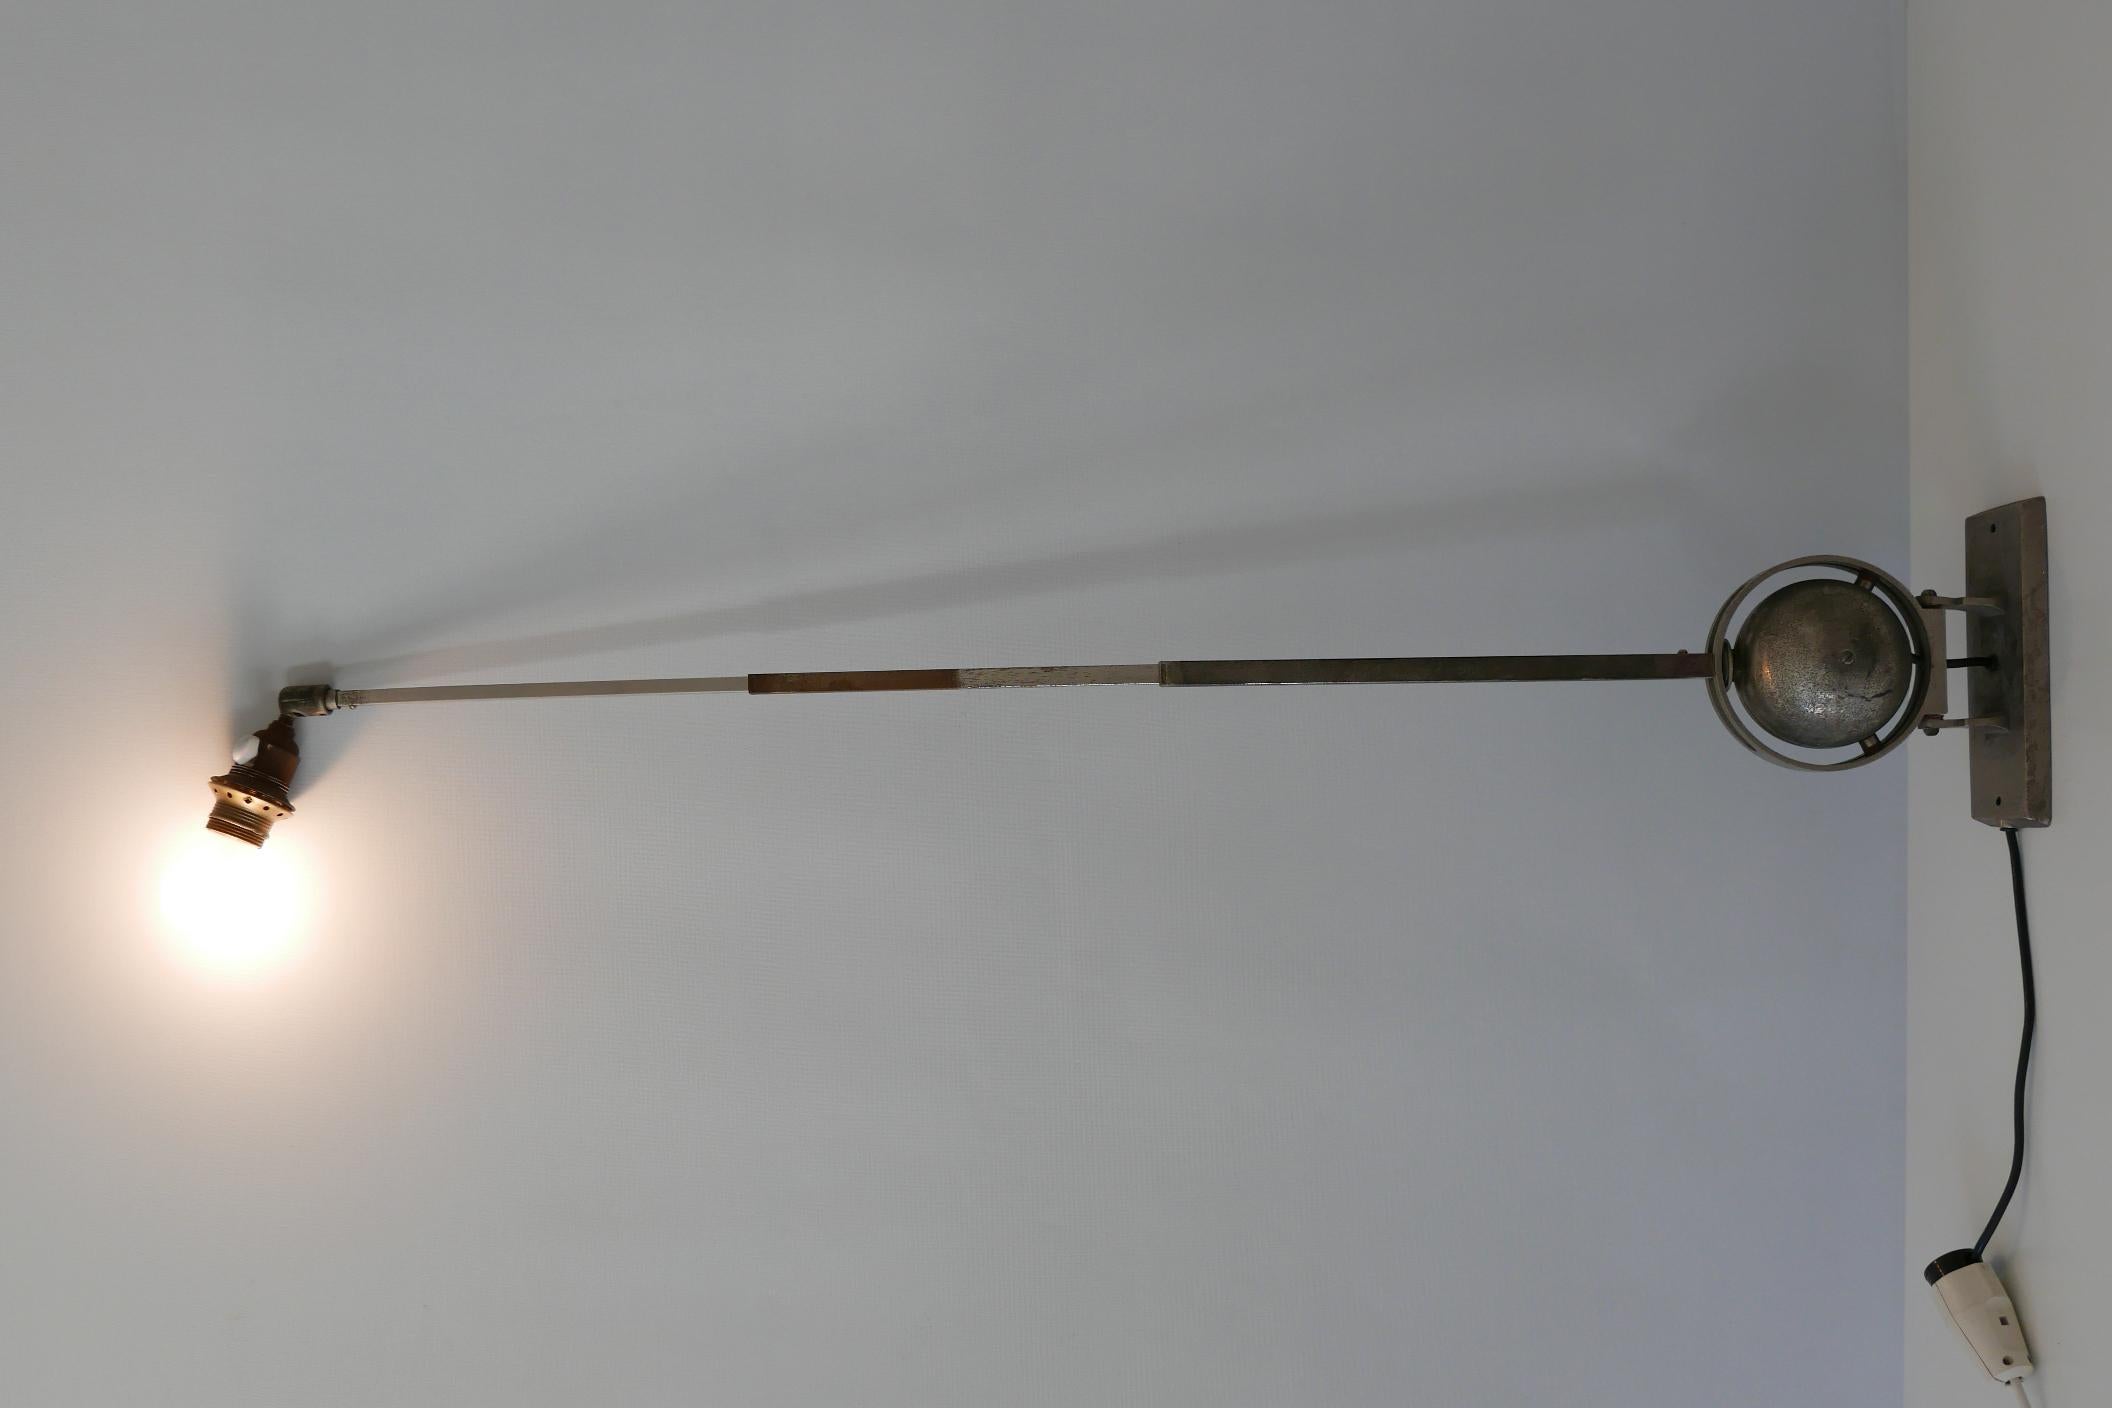 Äußerst seltene, gelenkige Bauhaus-Teleskop-Wandleuchte. In verschiedenen Positionen einstellbar. Wahrscheinlich in den 1920er Jahren entworfen und hergestellt, Deutschland.

Die aus vernickeltem Metall gefertigte Lampe wird mit 1 x E27 / E26